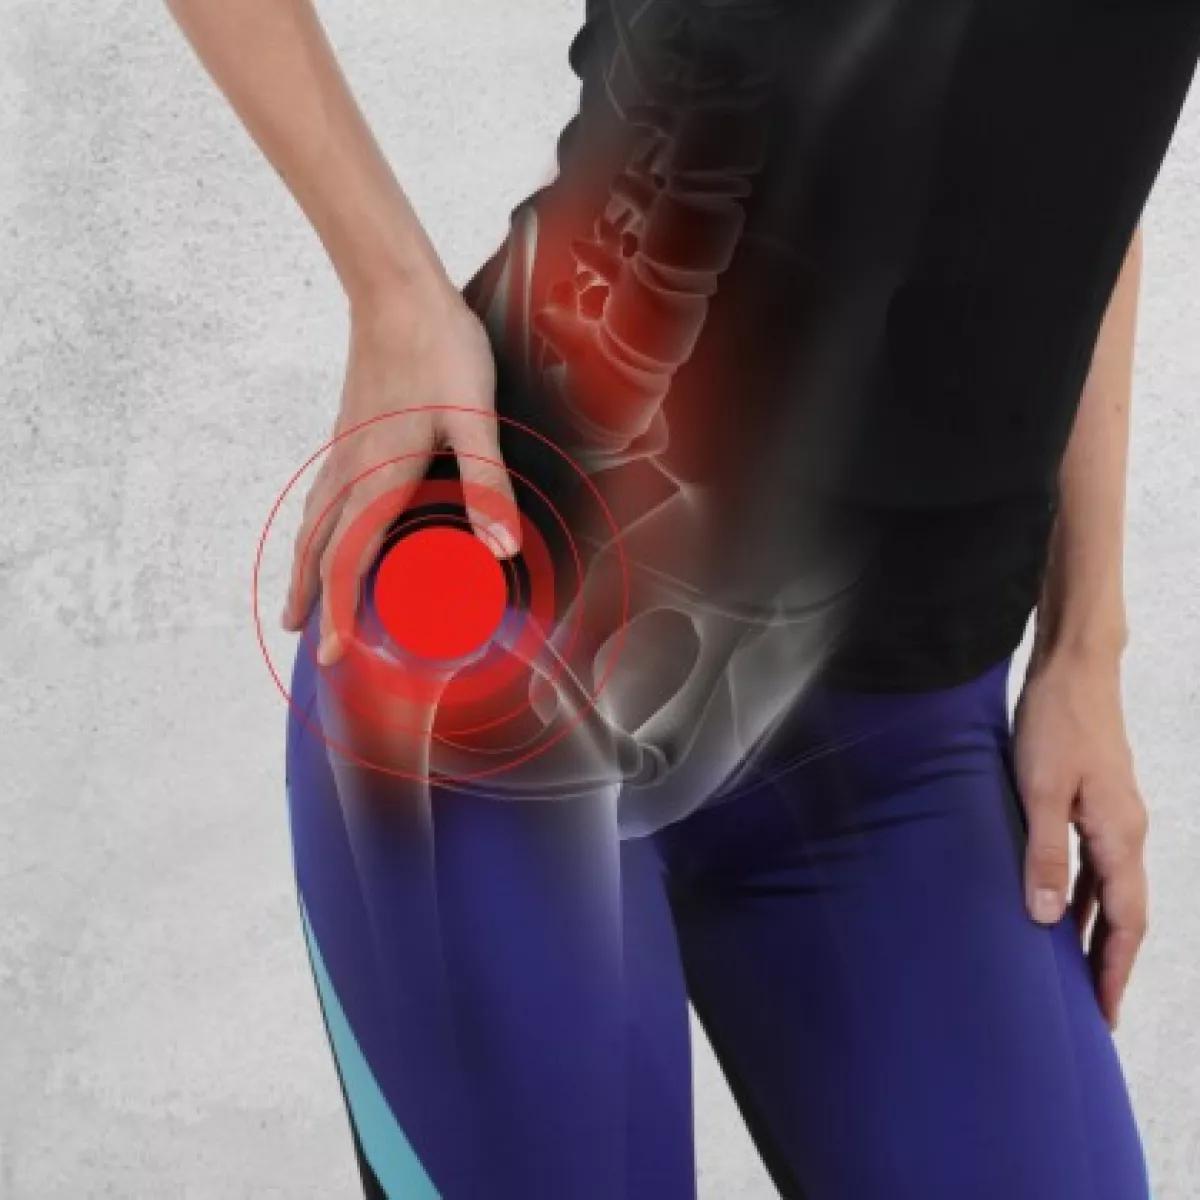 medicina natural para dolor de cadera - Qué hacer para aliviar el dolor de cadera